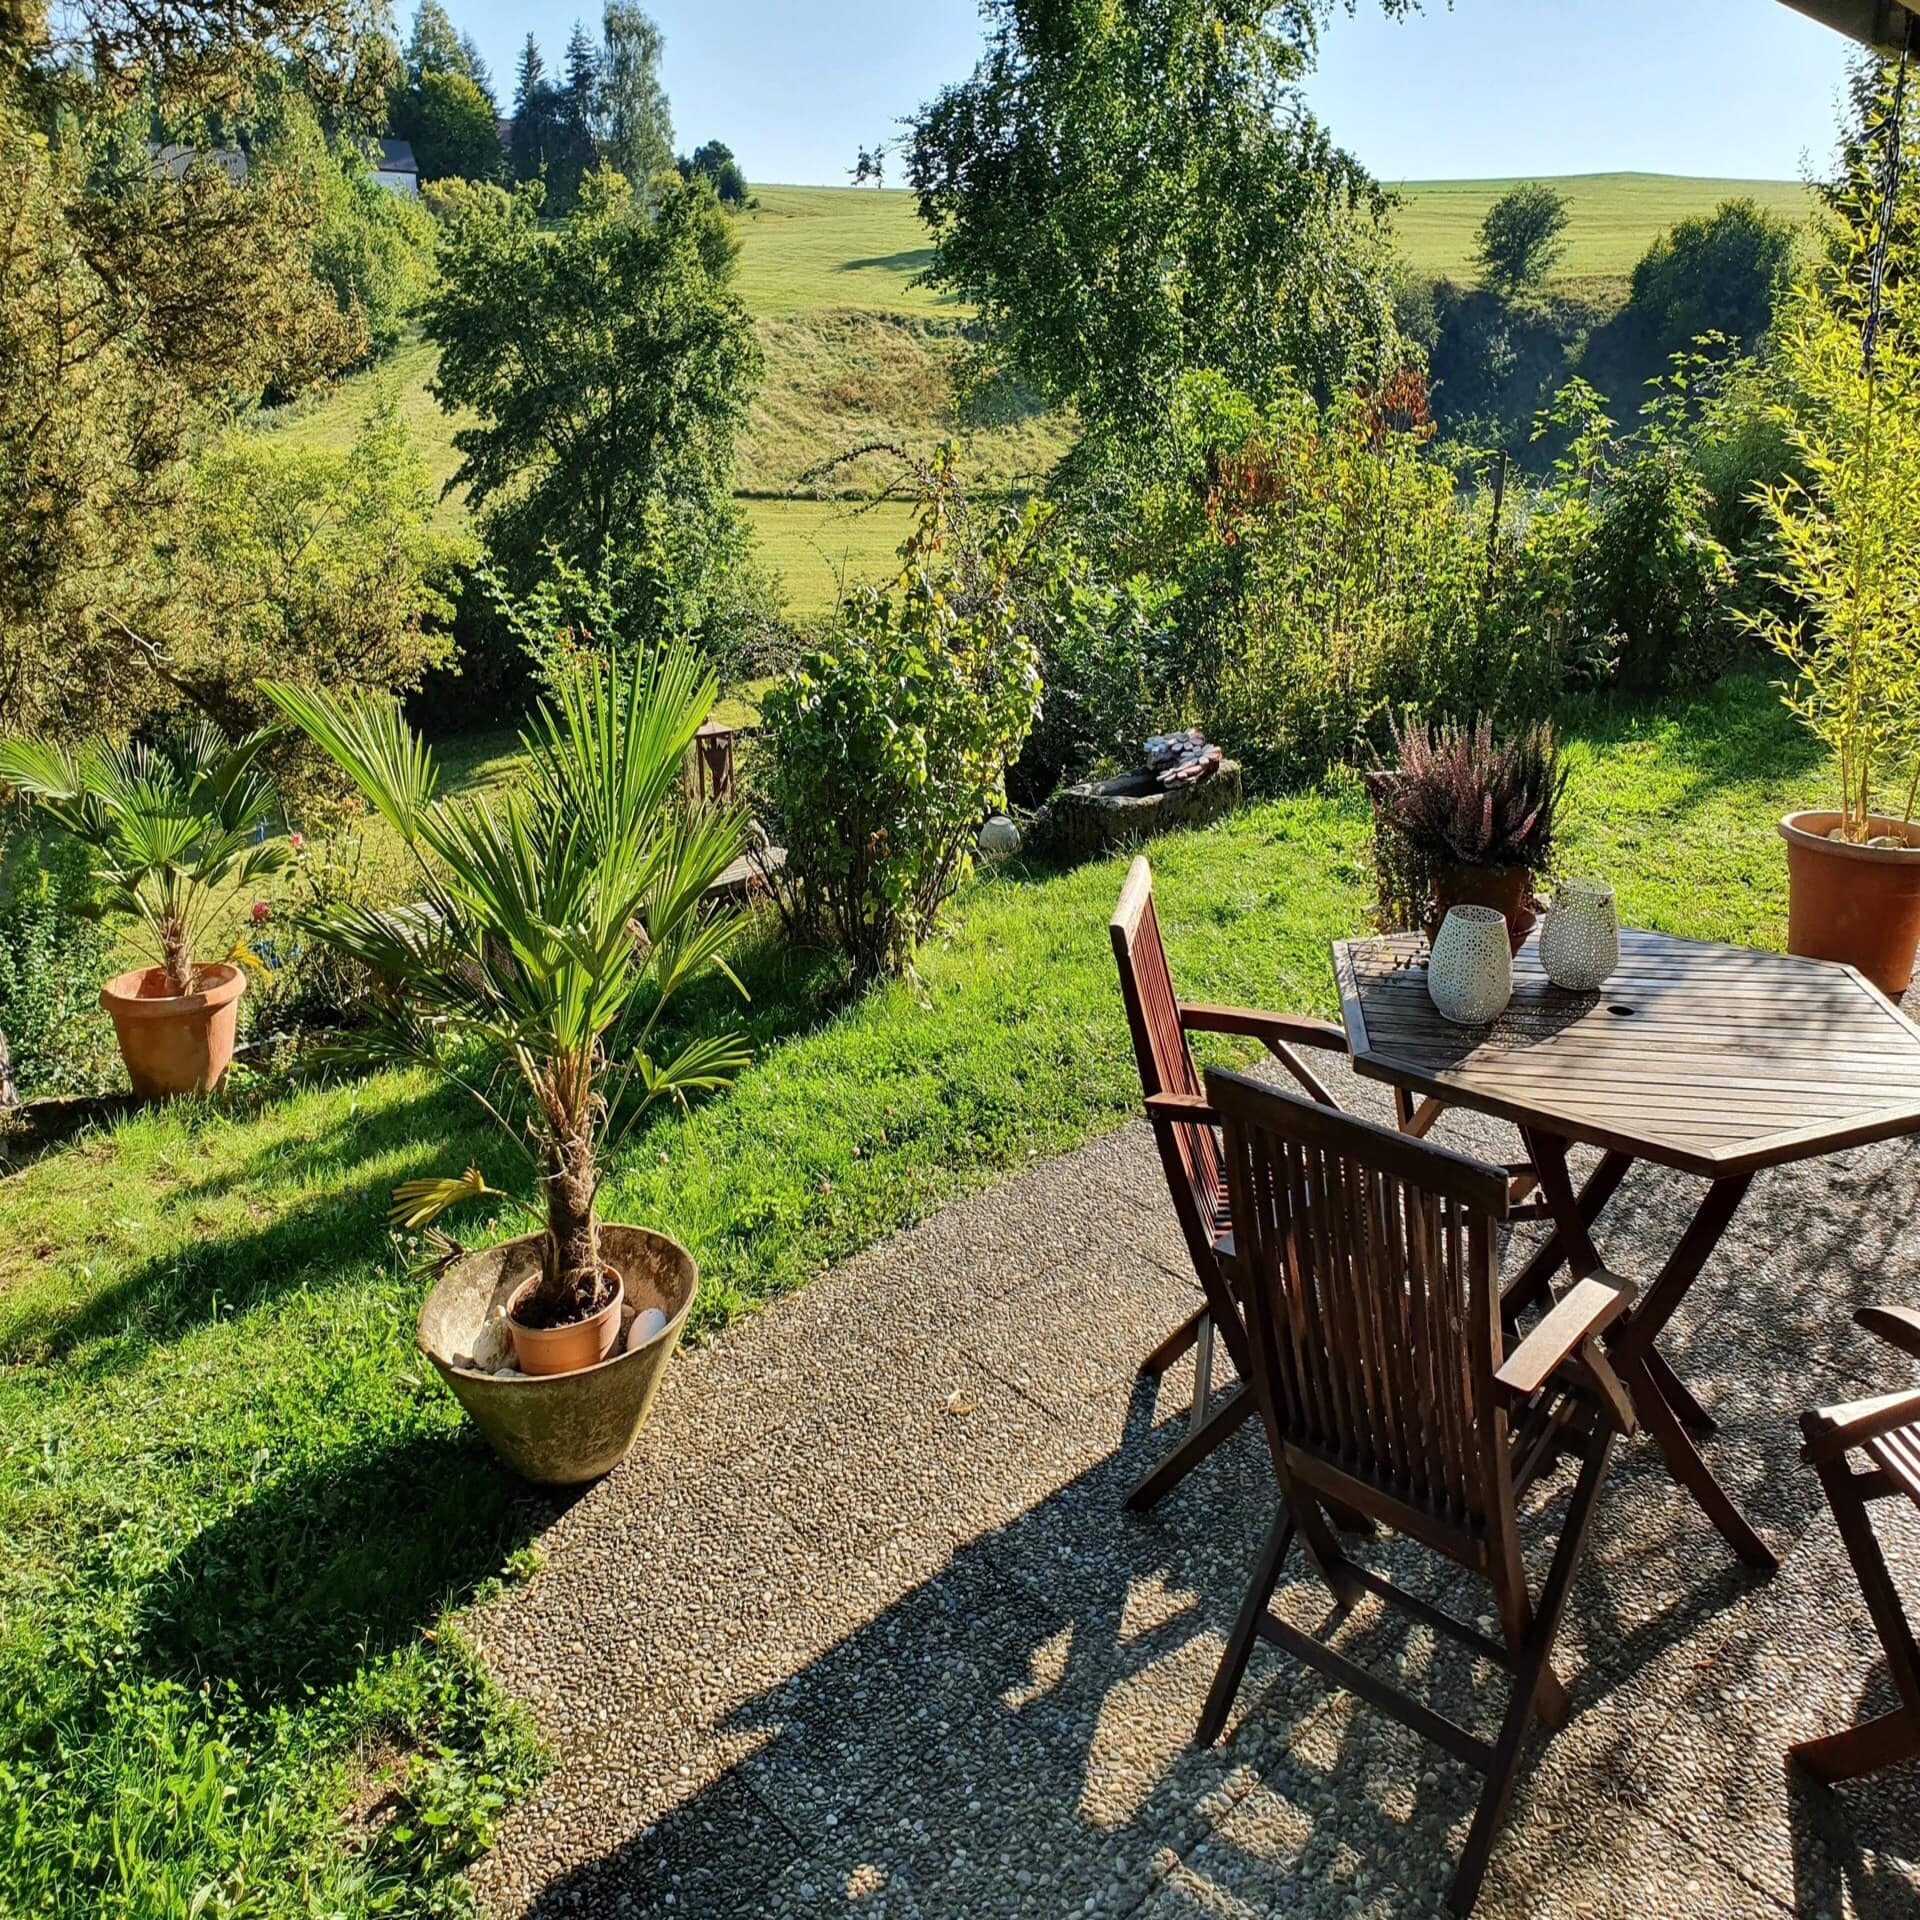 Terrasse mit Tisch und Stühlen in einem grünen Garten inmitten einer grünen Landschaft bei Sonnenschein.